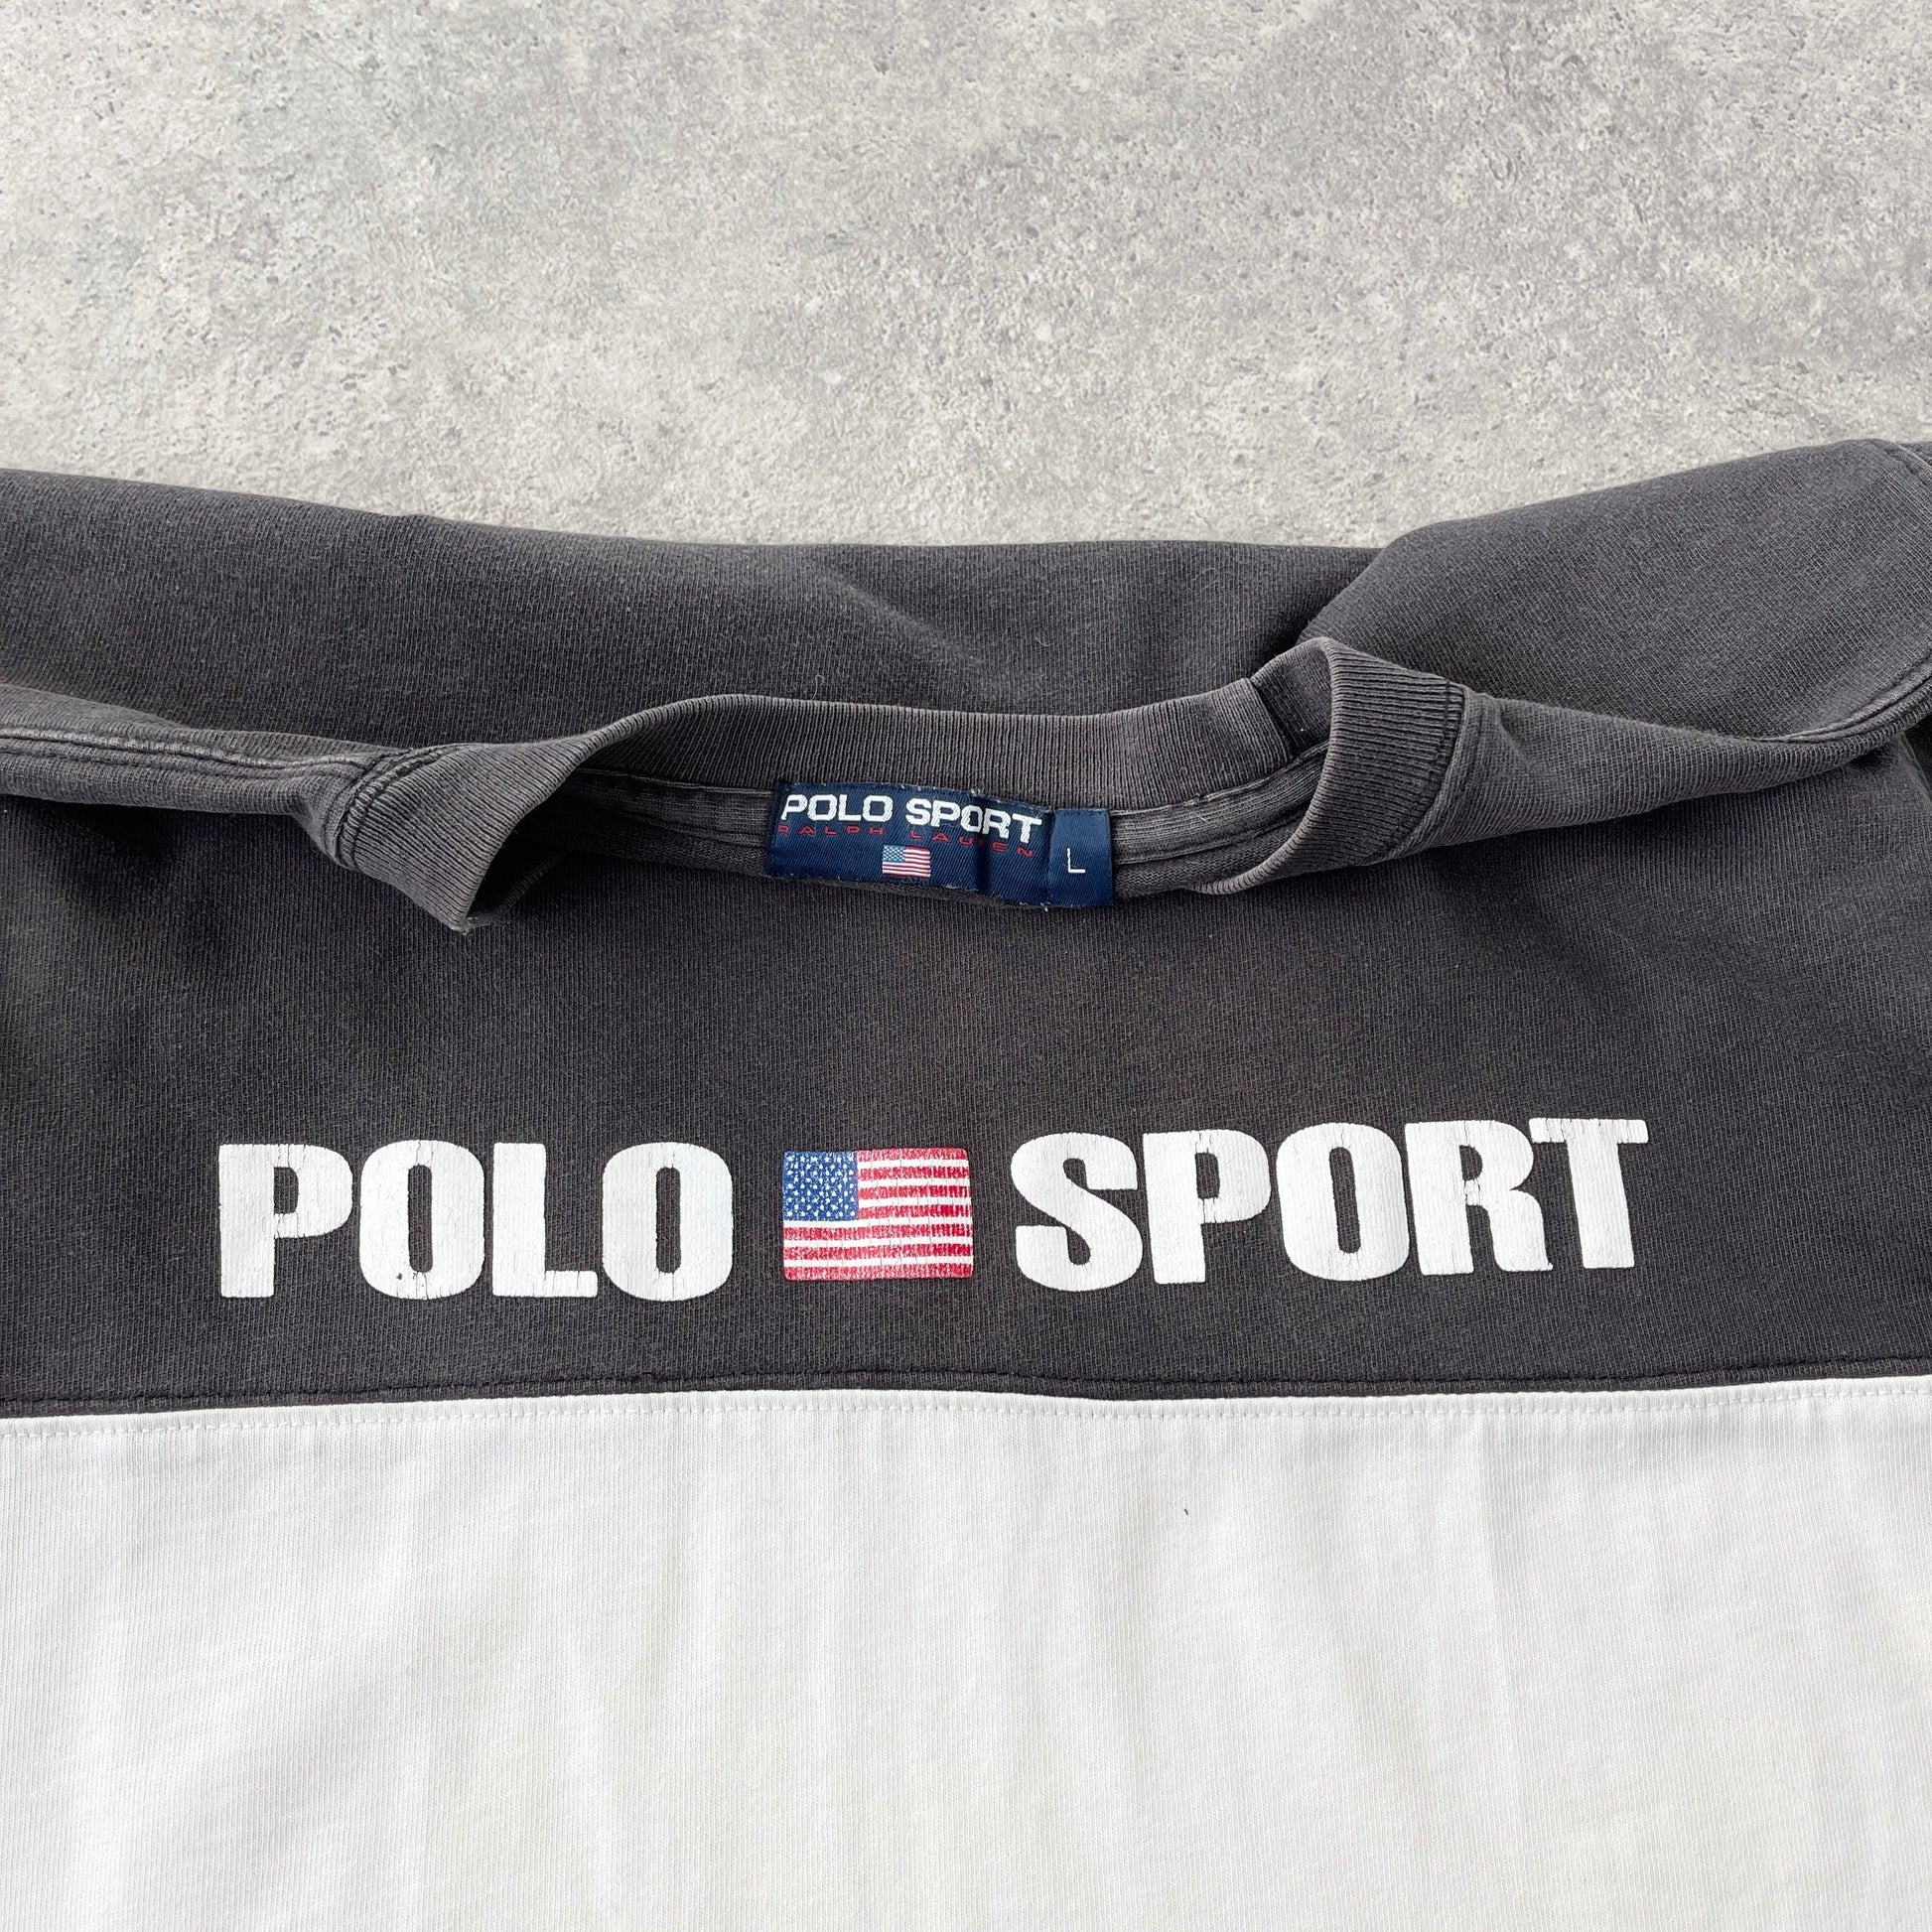 Polo Sport Ralph Lauren 1990s spellout colour block t-shirt (L) - Known Source